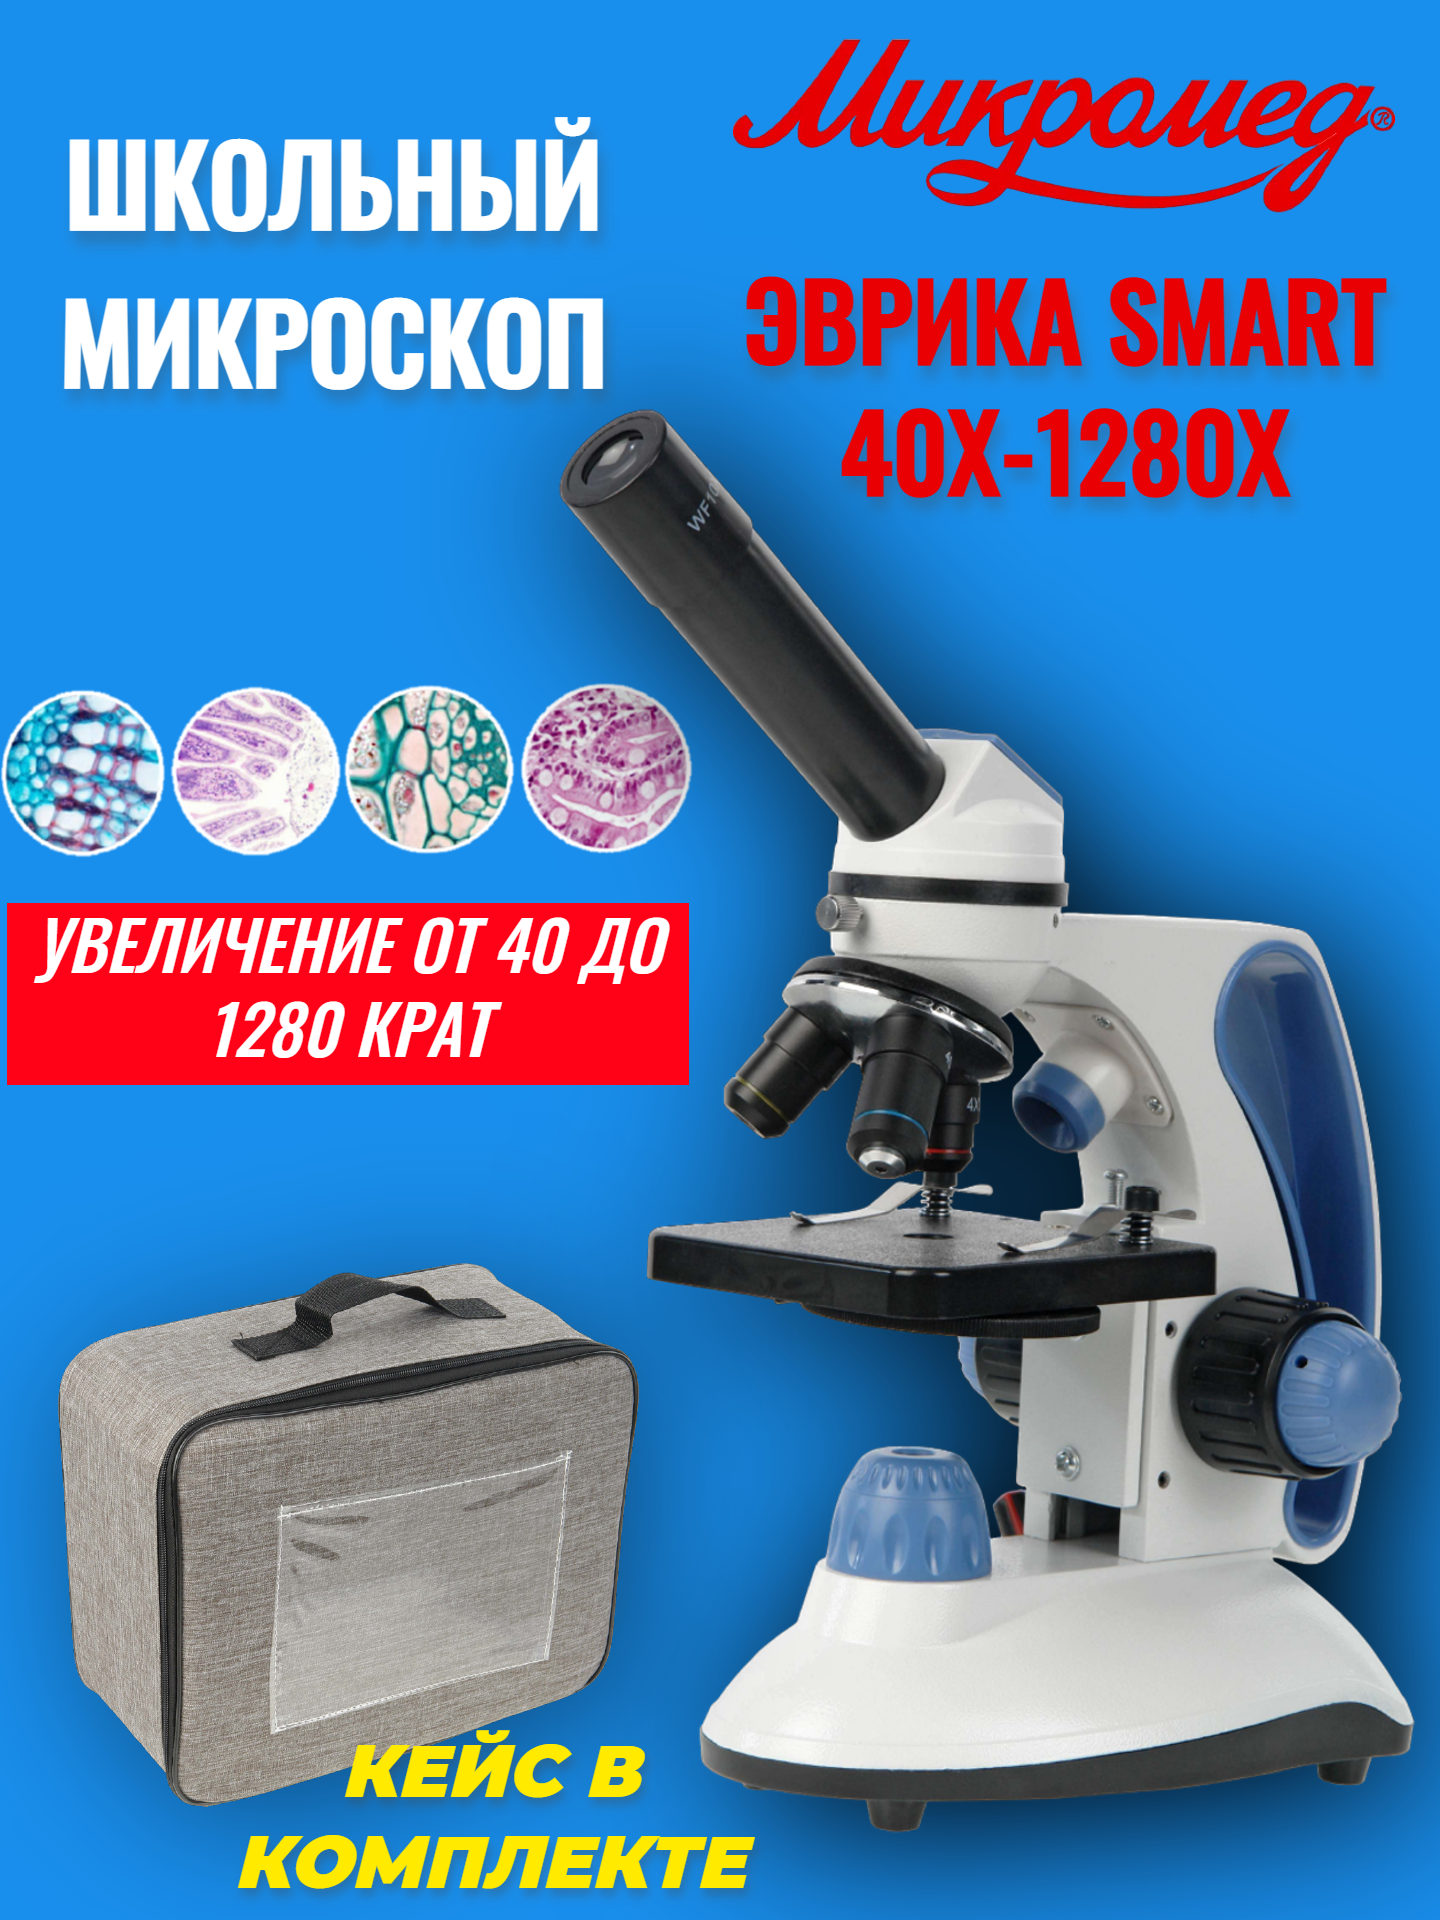 Микроскоп школьный учебный Микромед Эврика SMART 40х-1280х в текстильном кейсе микроскоп школьный микромед эврика 40х 1280х в кейсе